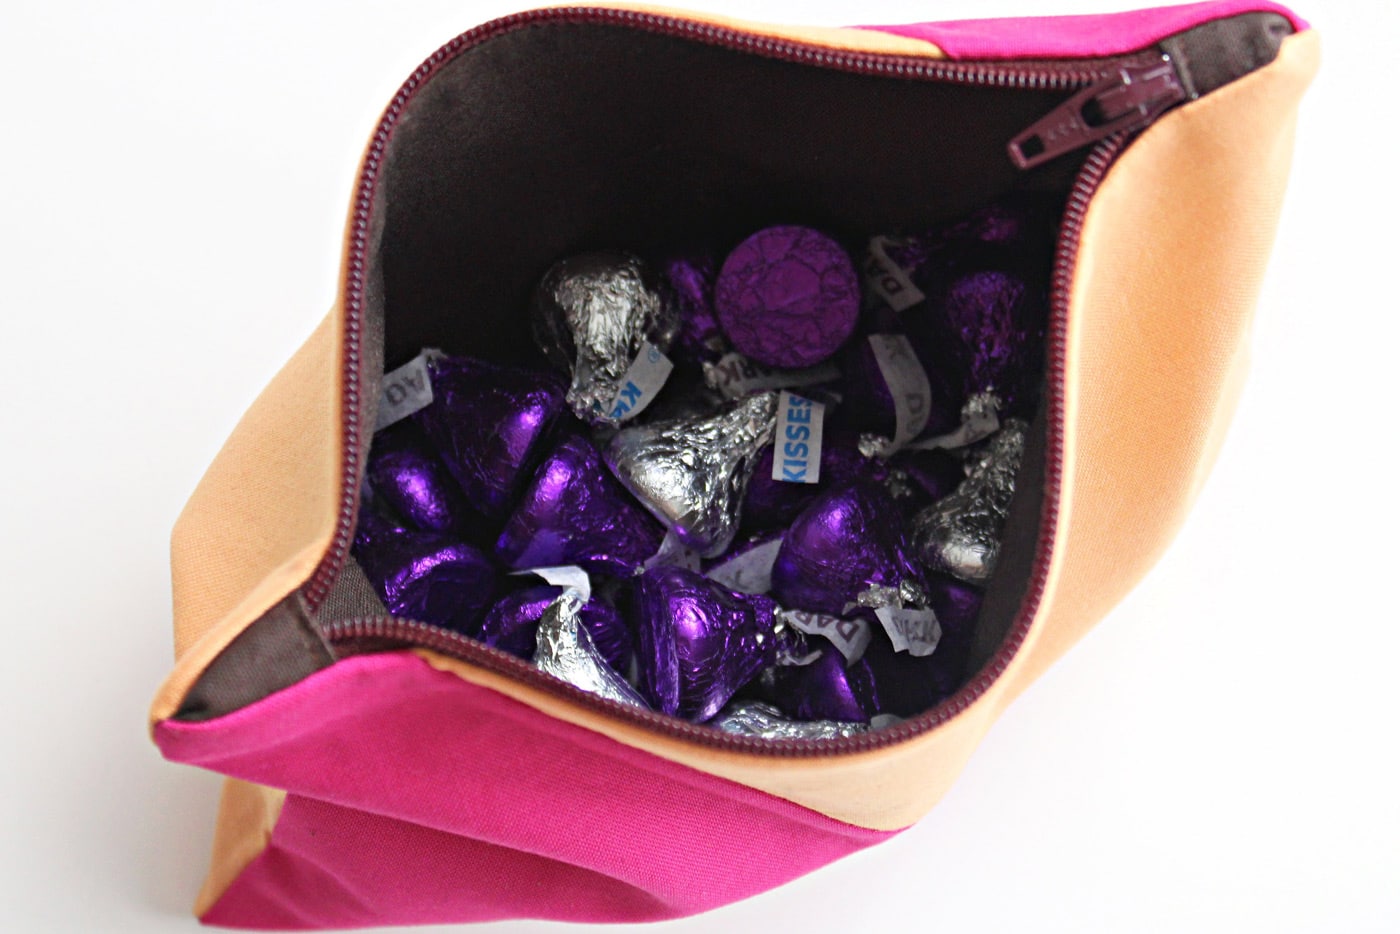 Pochette zippée rose et pêche avec applique baiser au chocolat et bonbons au chocolat sur table blanche